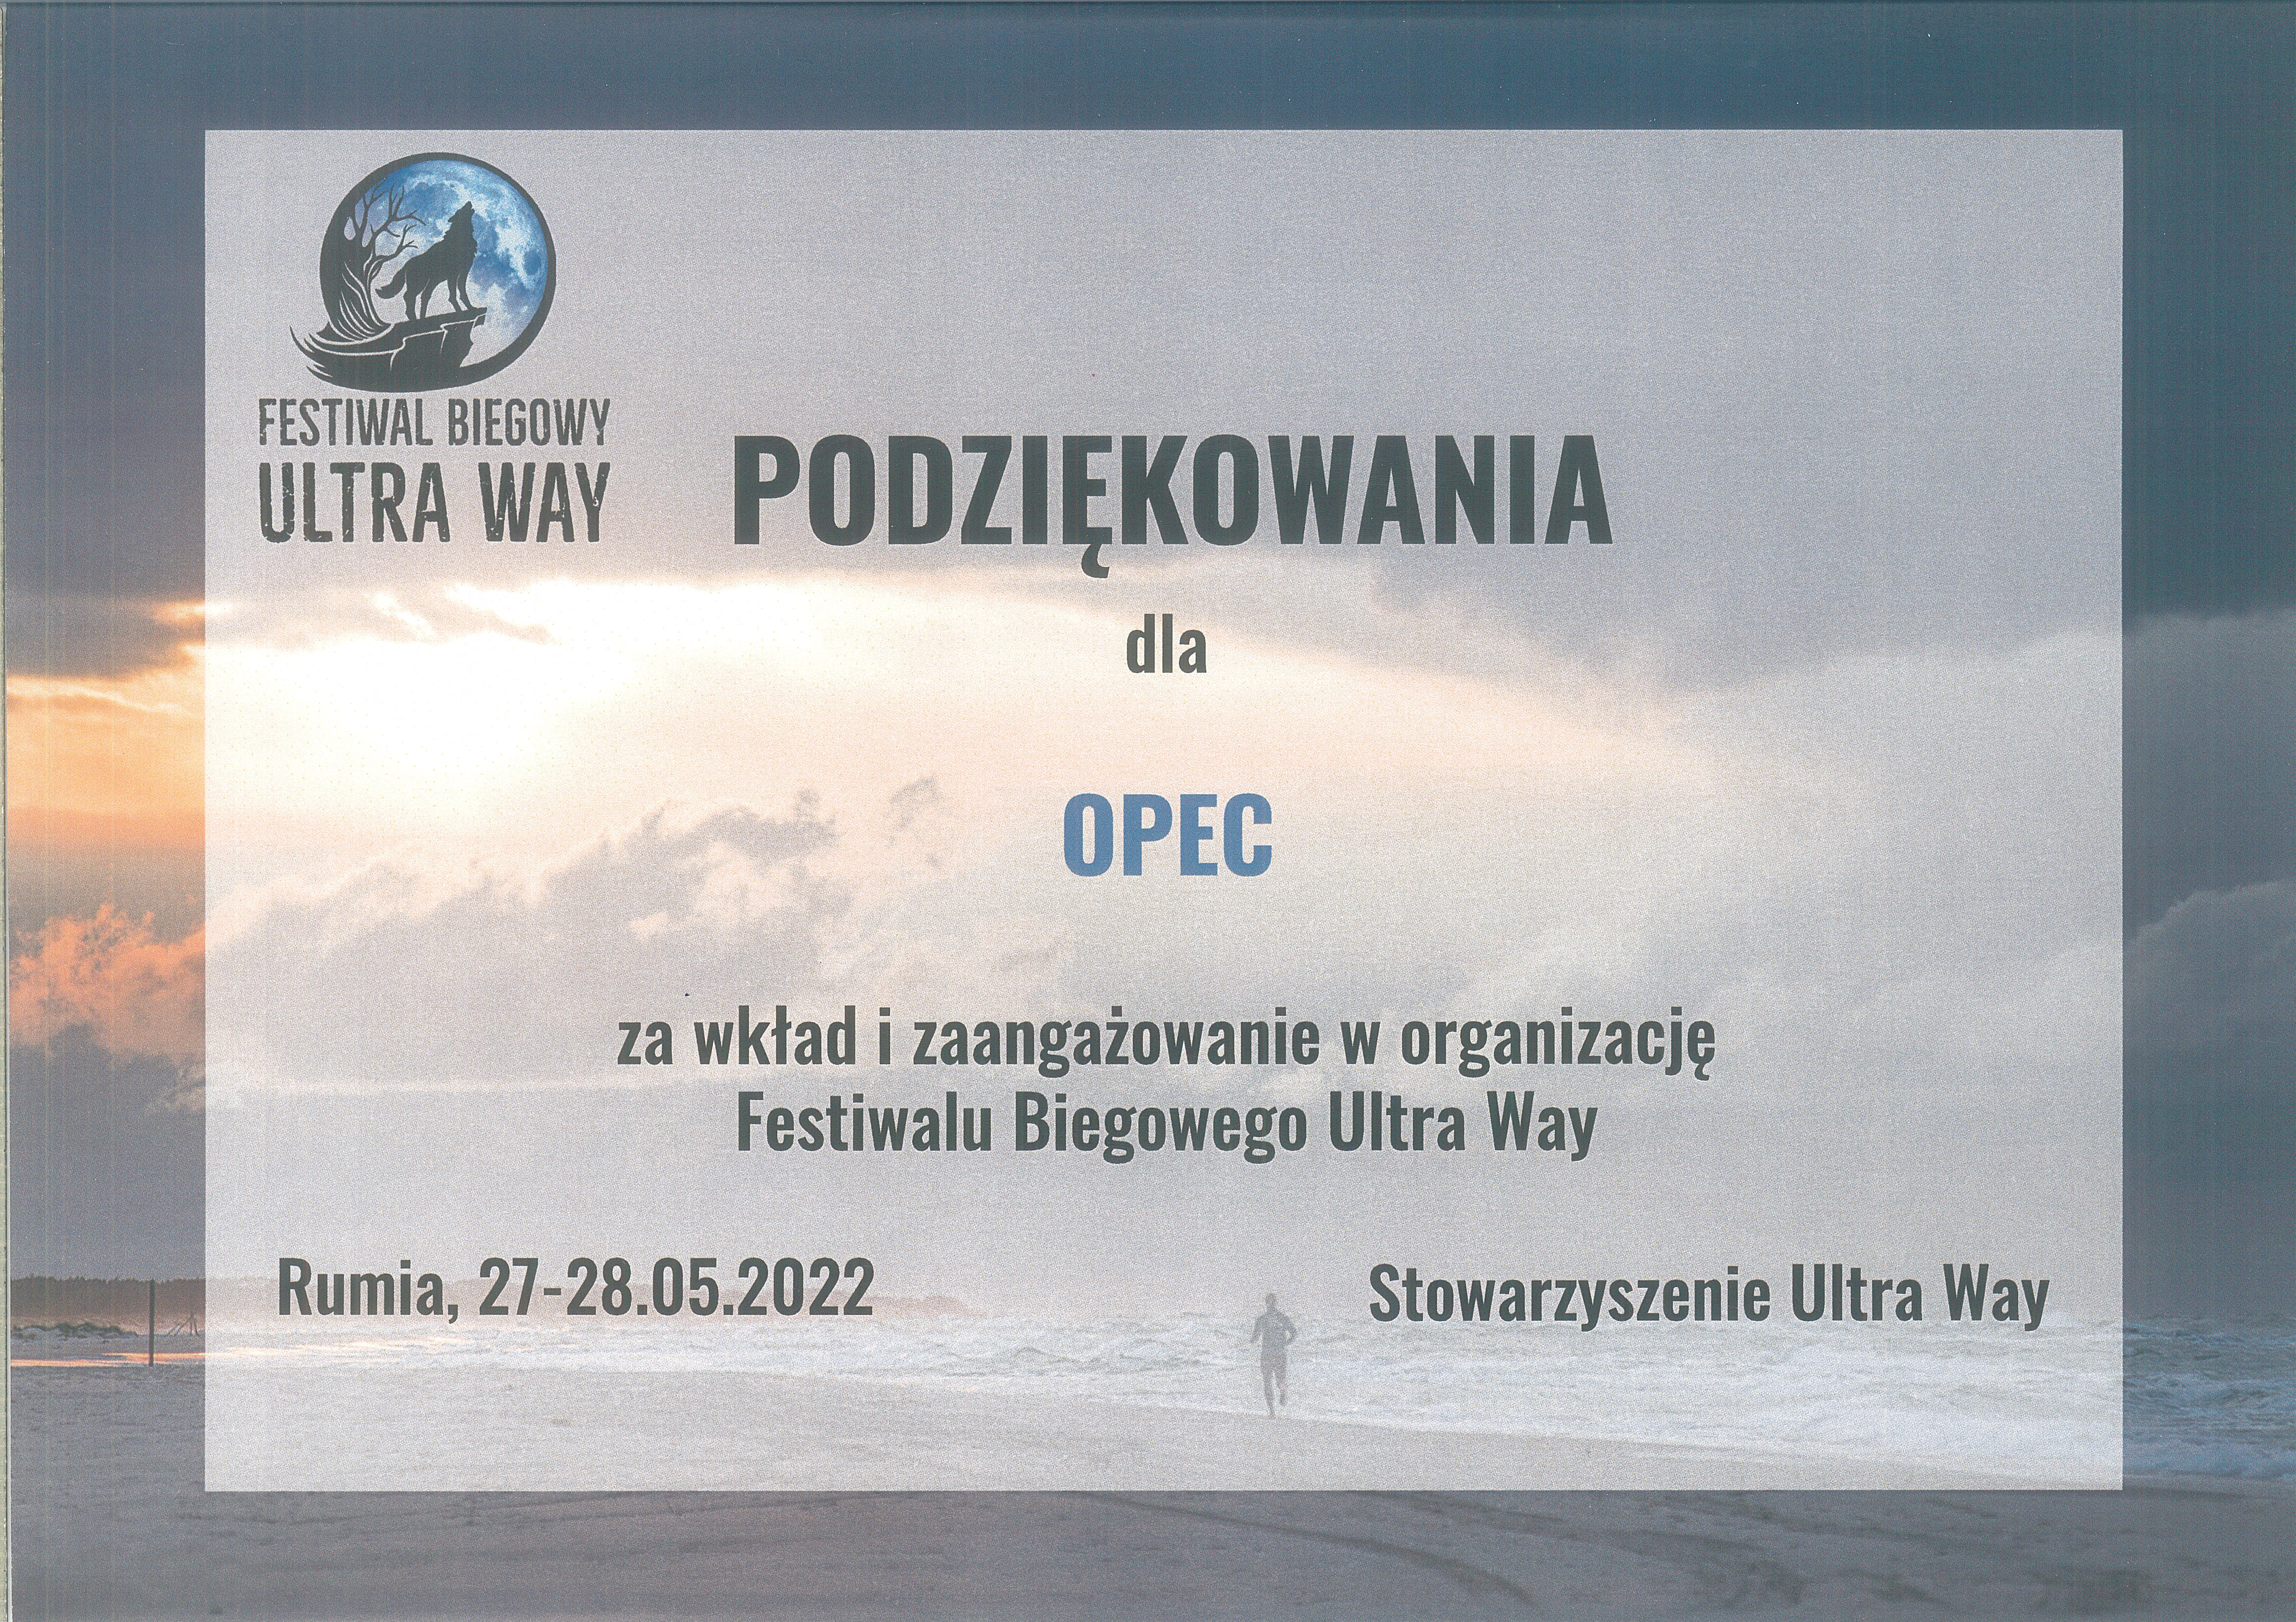 Podziękowania dla OPEC od organizatorów Festiwalu Biegowego Ultra Way